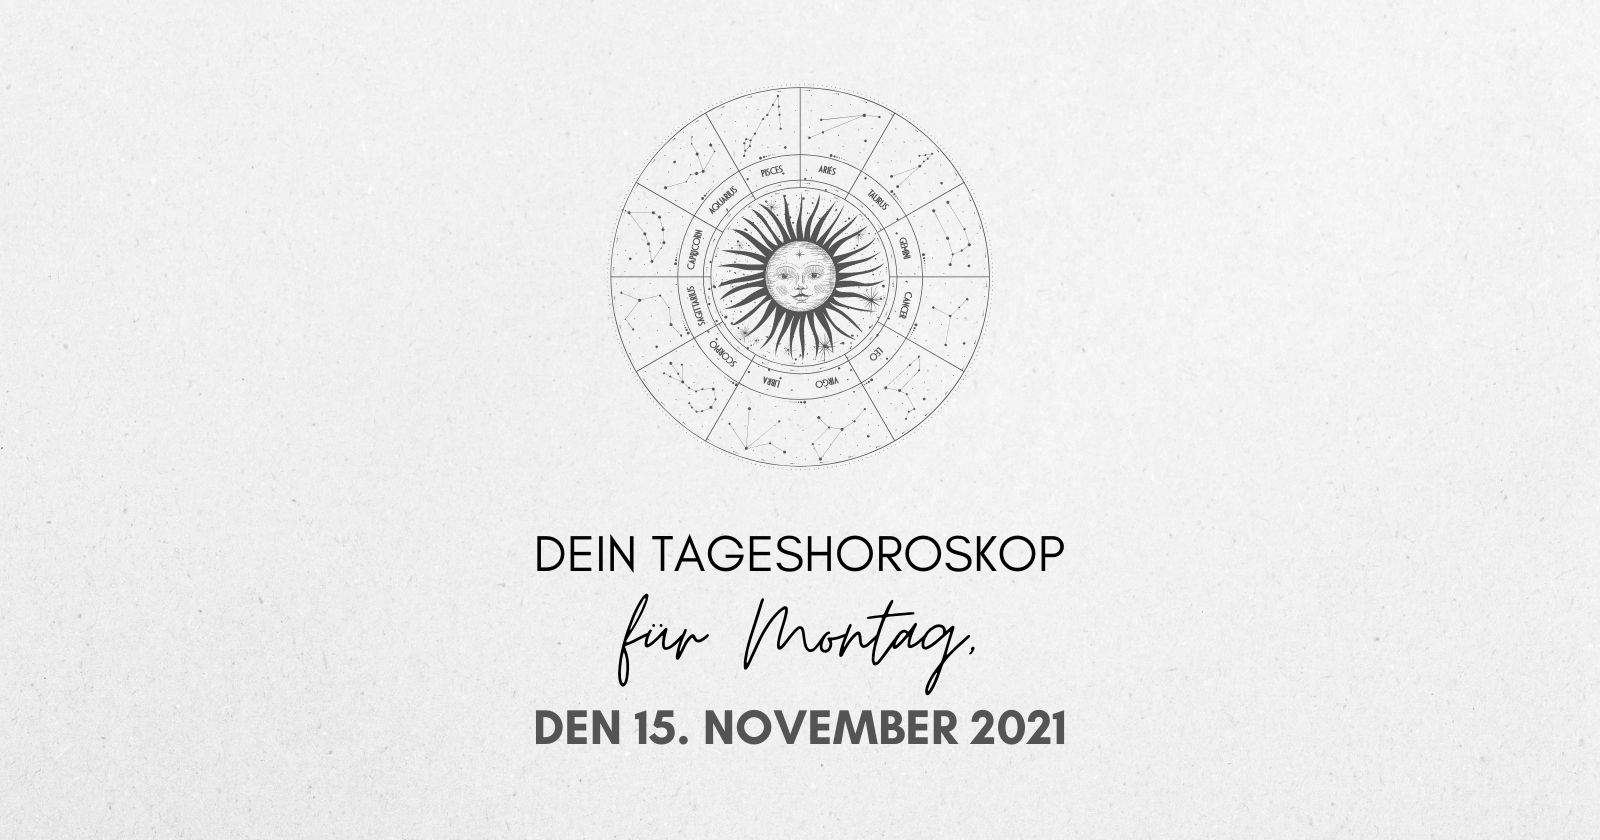 Dein Tageshoroskop für Montag, den 15. November 2021